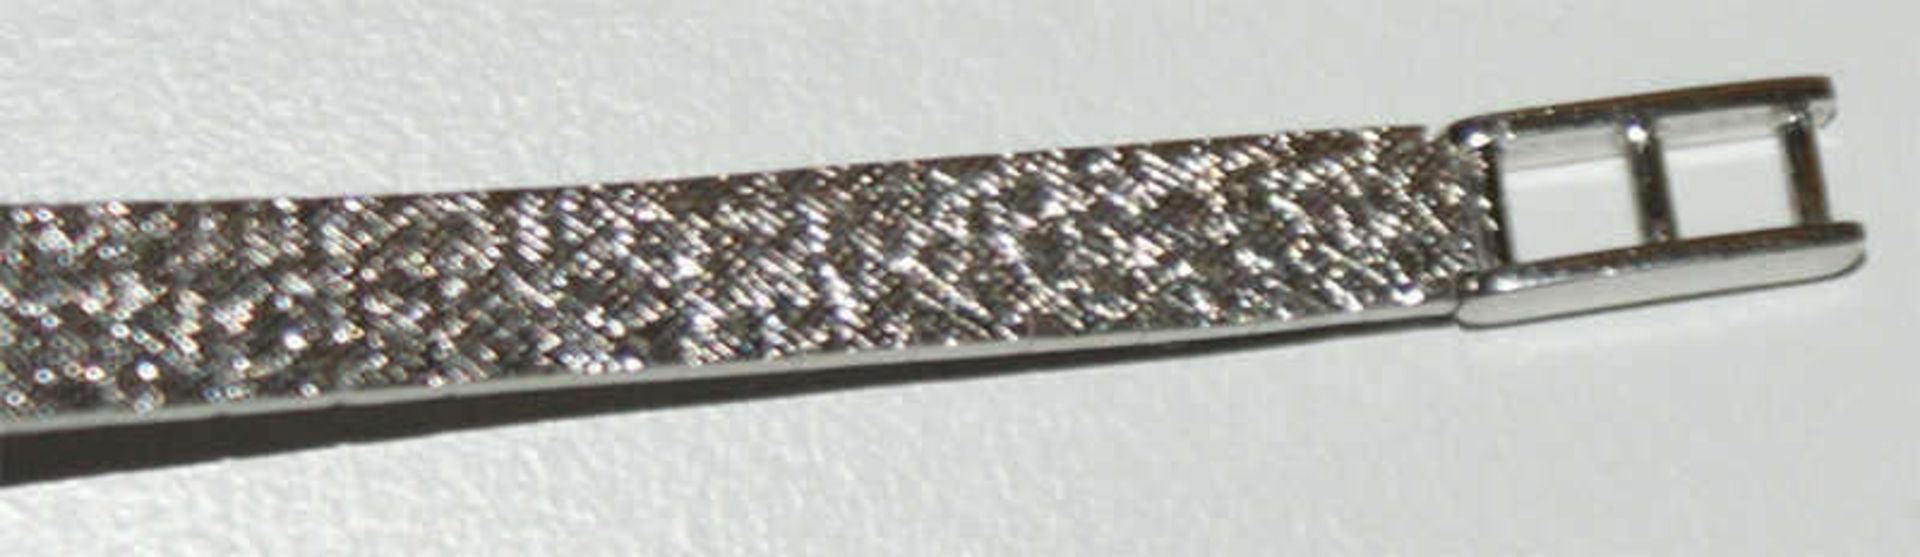 Damenarmbanduhr, 585er Weißgold, besetzt mit zahlreichen Brillianten im Kranz. Hersteller Amara. - Image 4 of 4